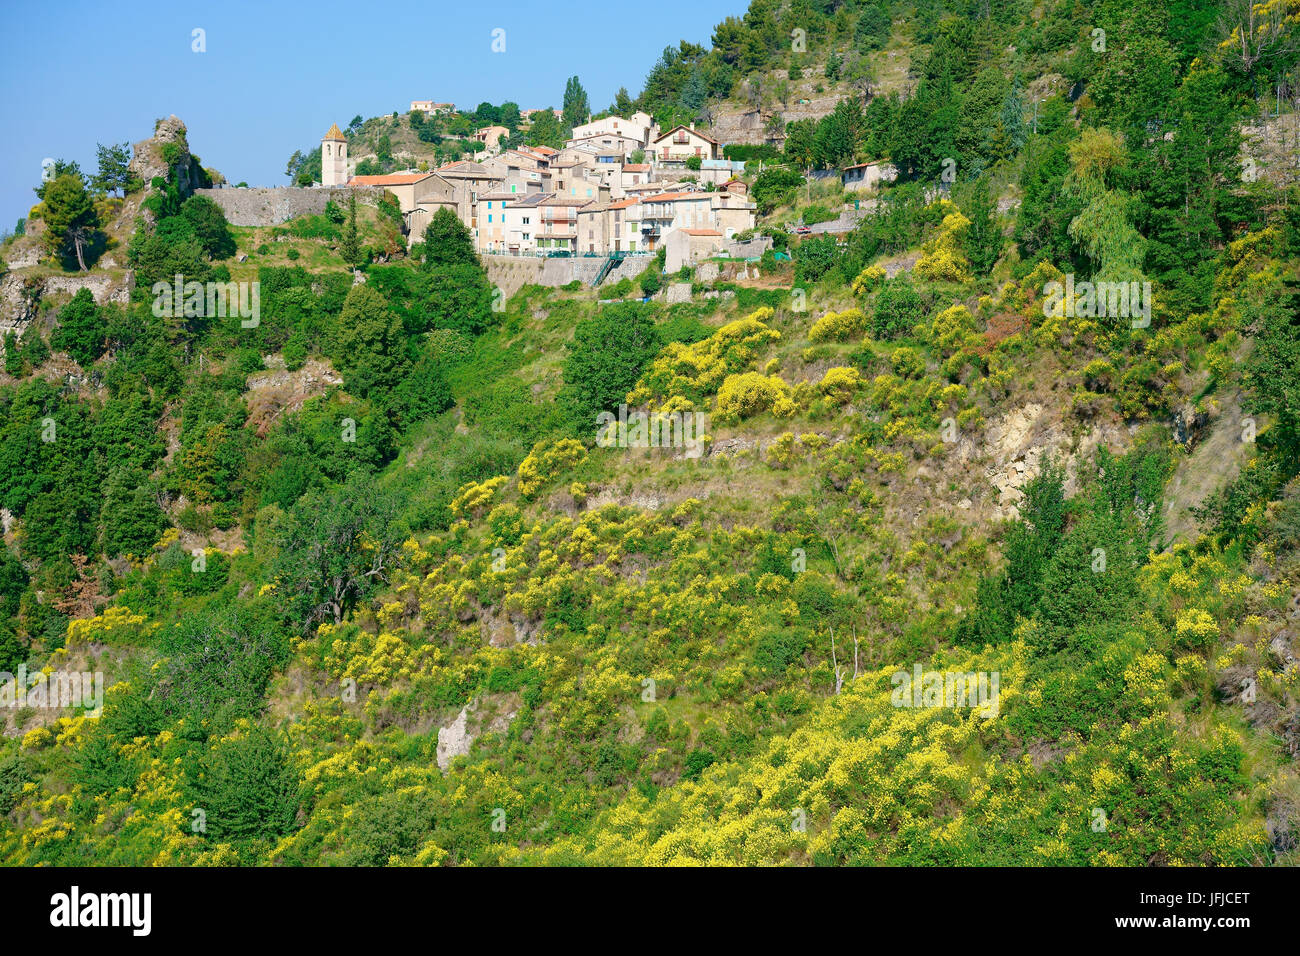 Primavera con ginestra in fiore vicino a un borgo medievale in cima a una collina. Toudon, backcountry della Costa Azzurra, Alpes-Maritimes, Francia. Foto Stock